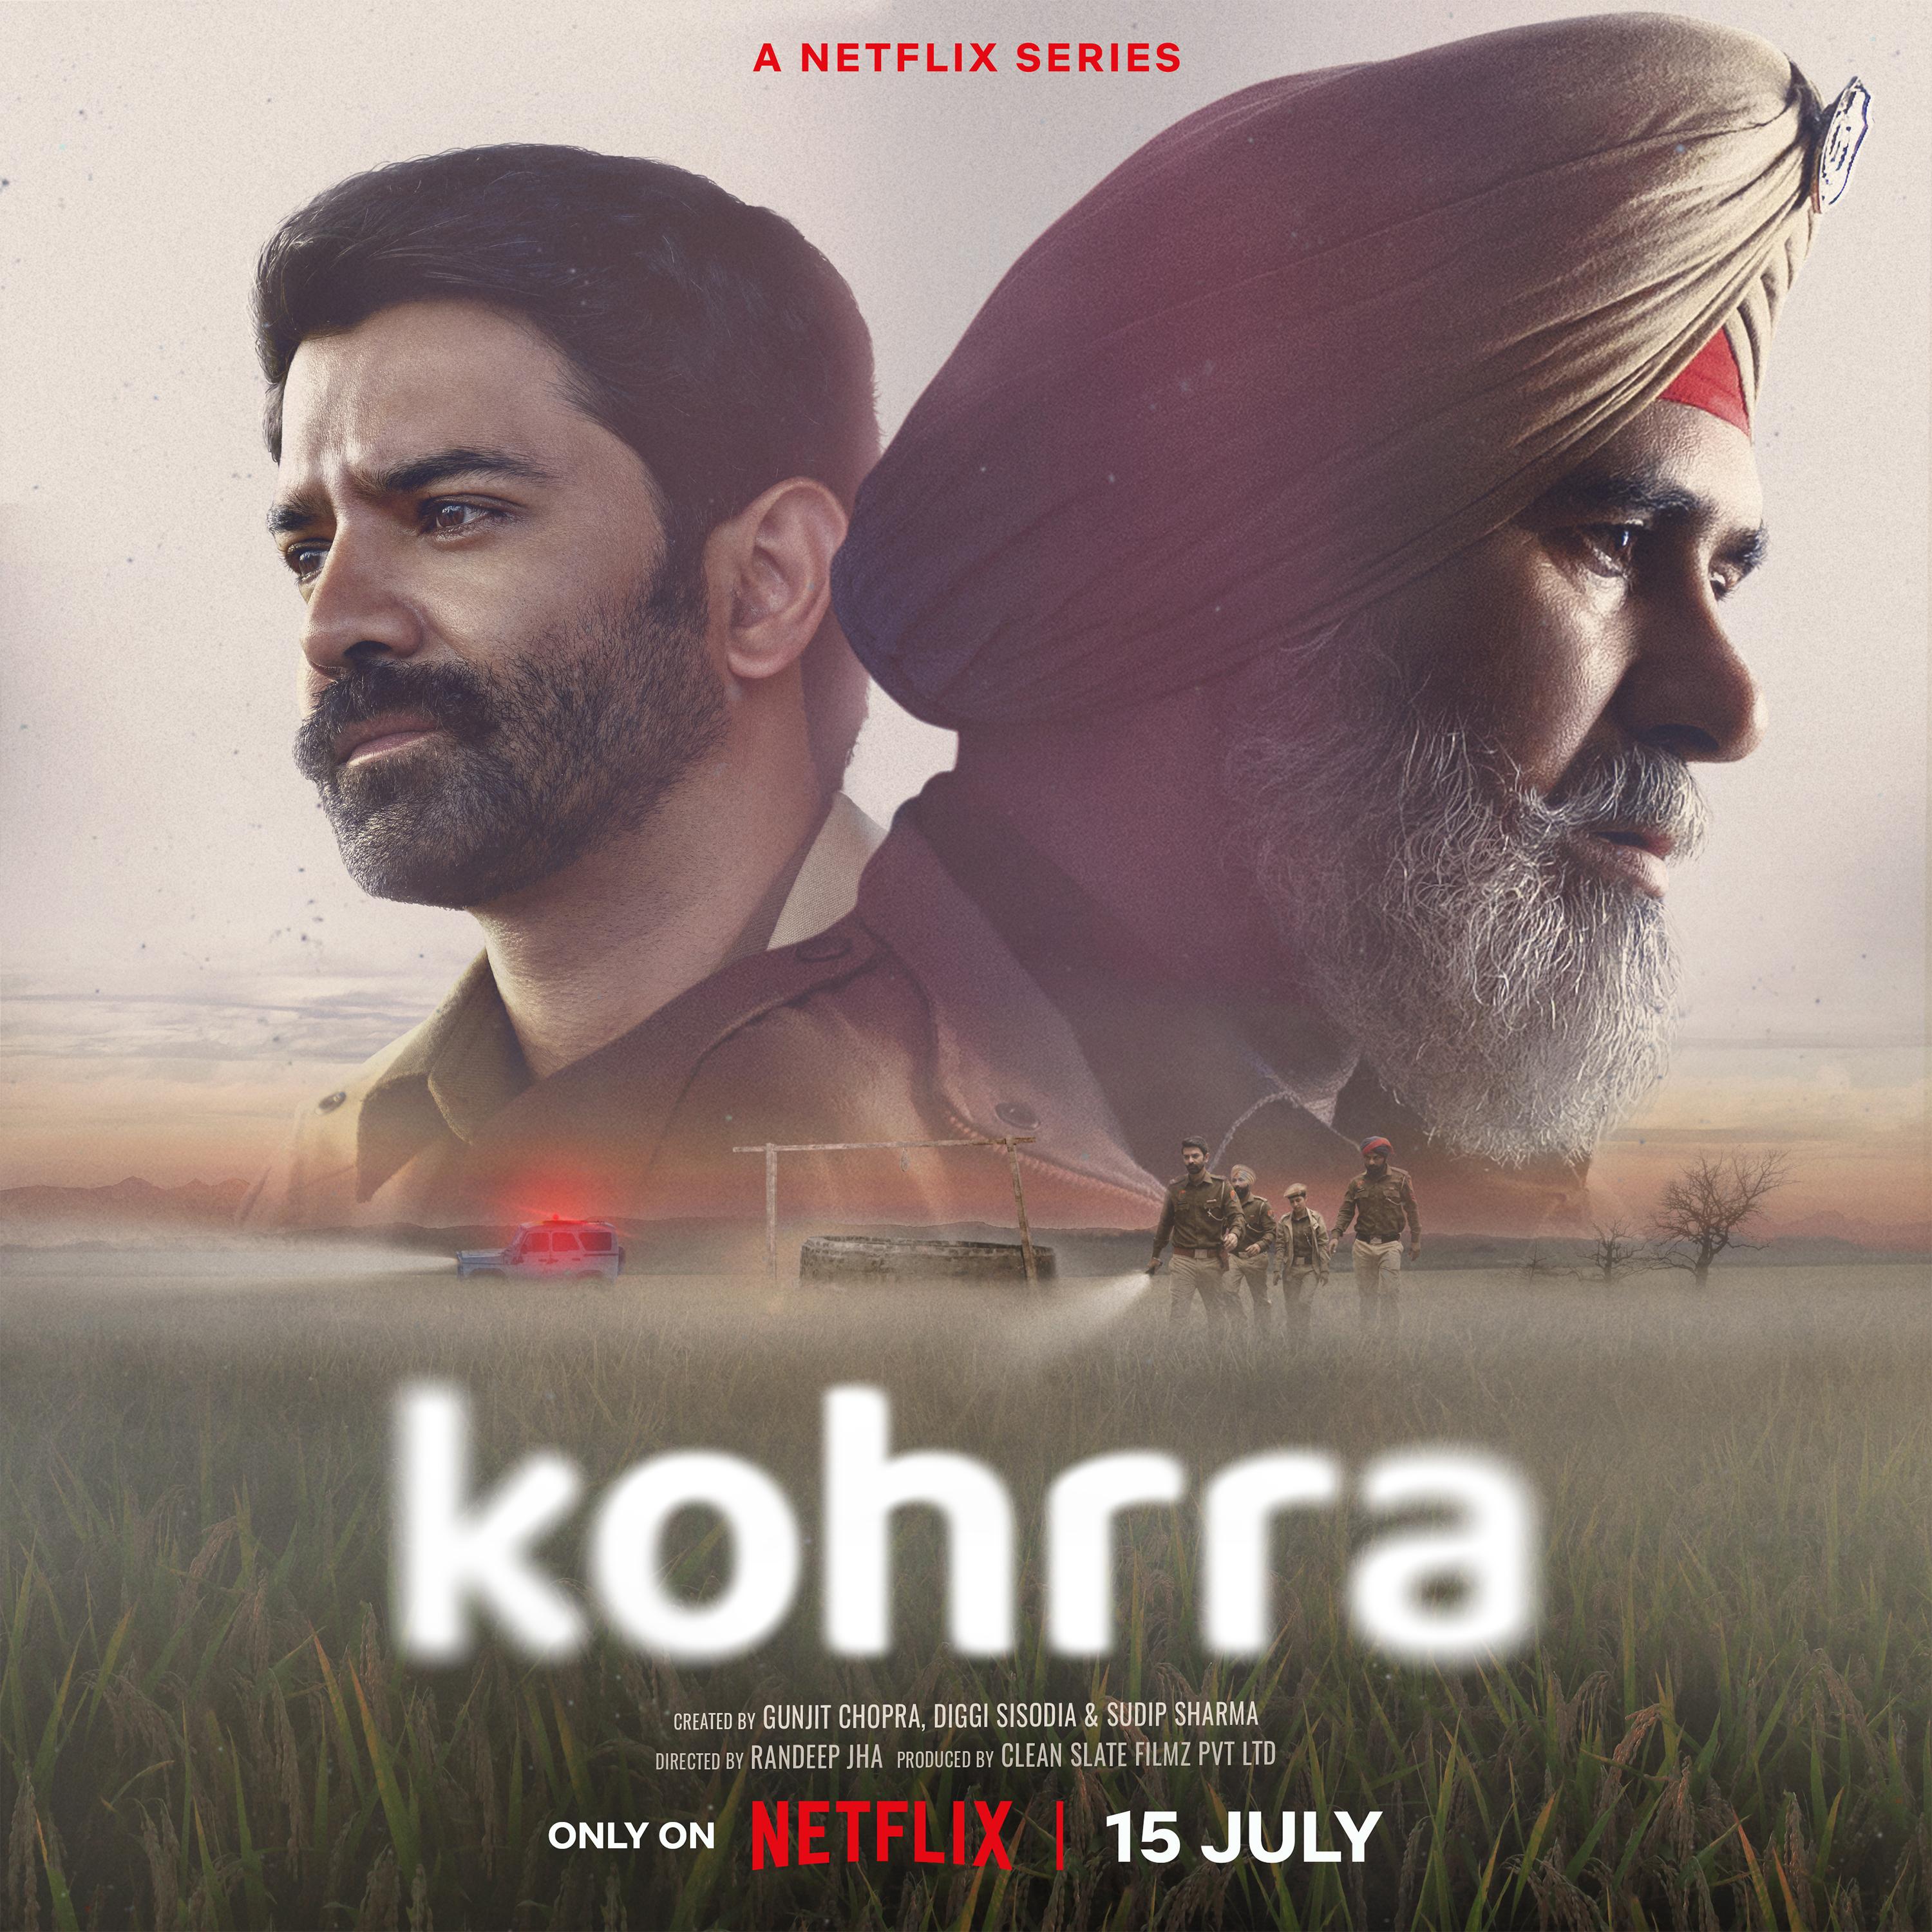 TV ratings for Kohrra (कोहरा) in Denmark. Netflix TV series